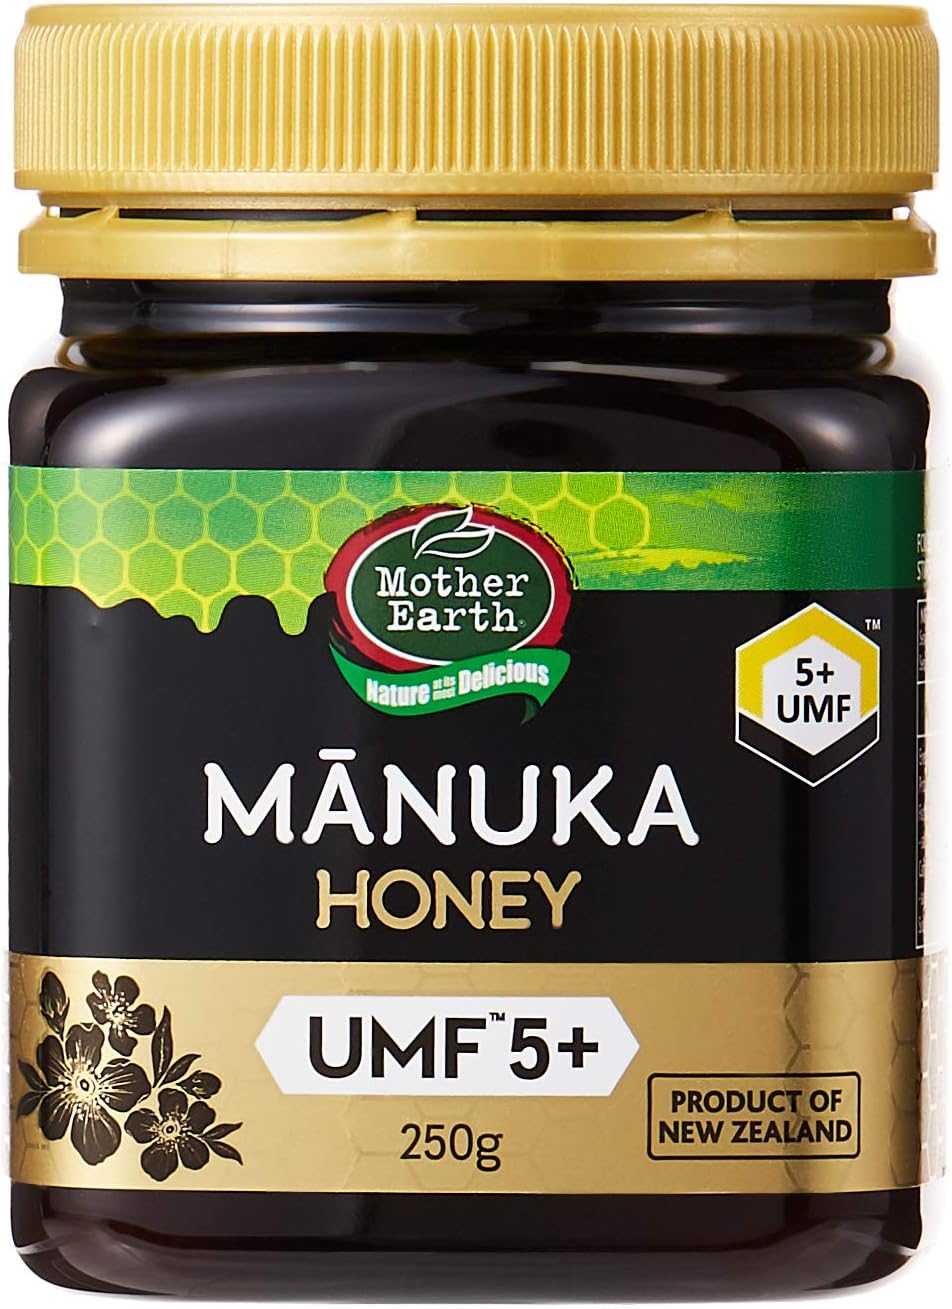 Mother Earth Manuka UMF 5+ Honey